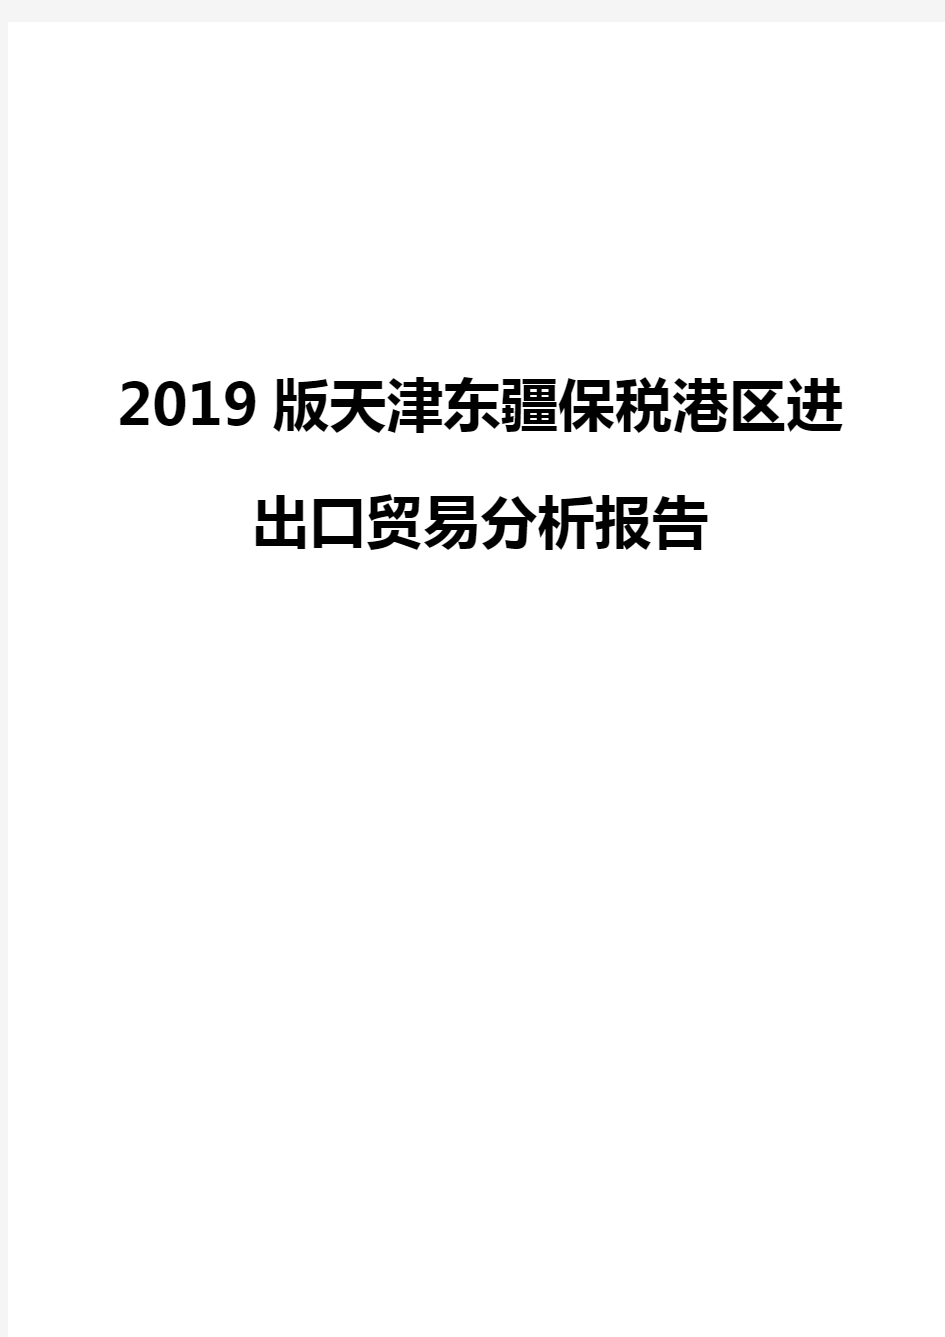 2019版天津东疆保税港区进出口贸易分析报告